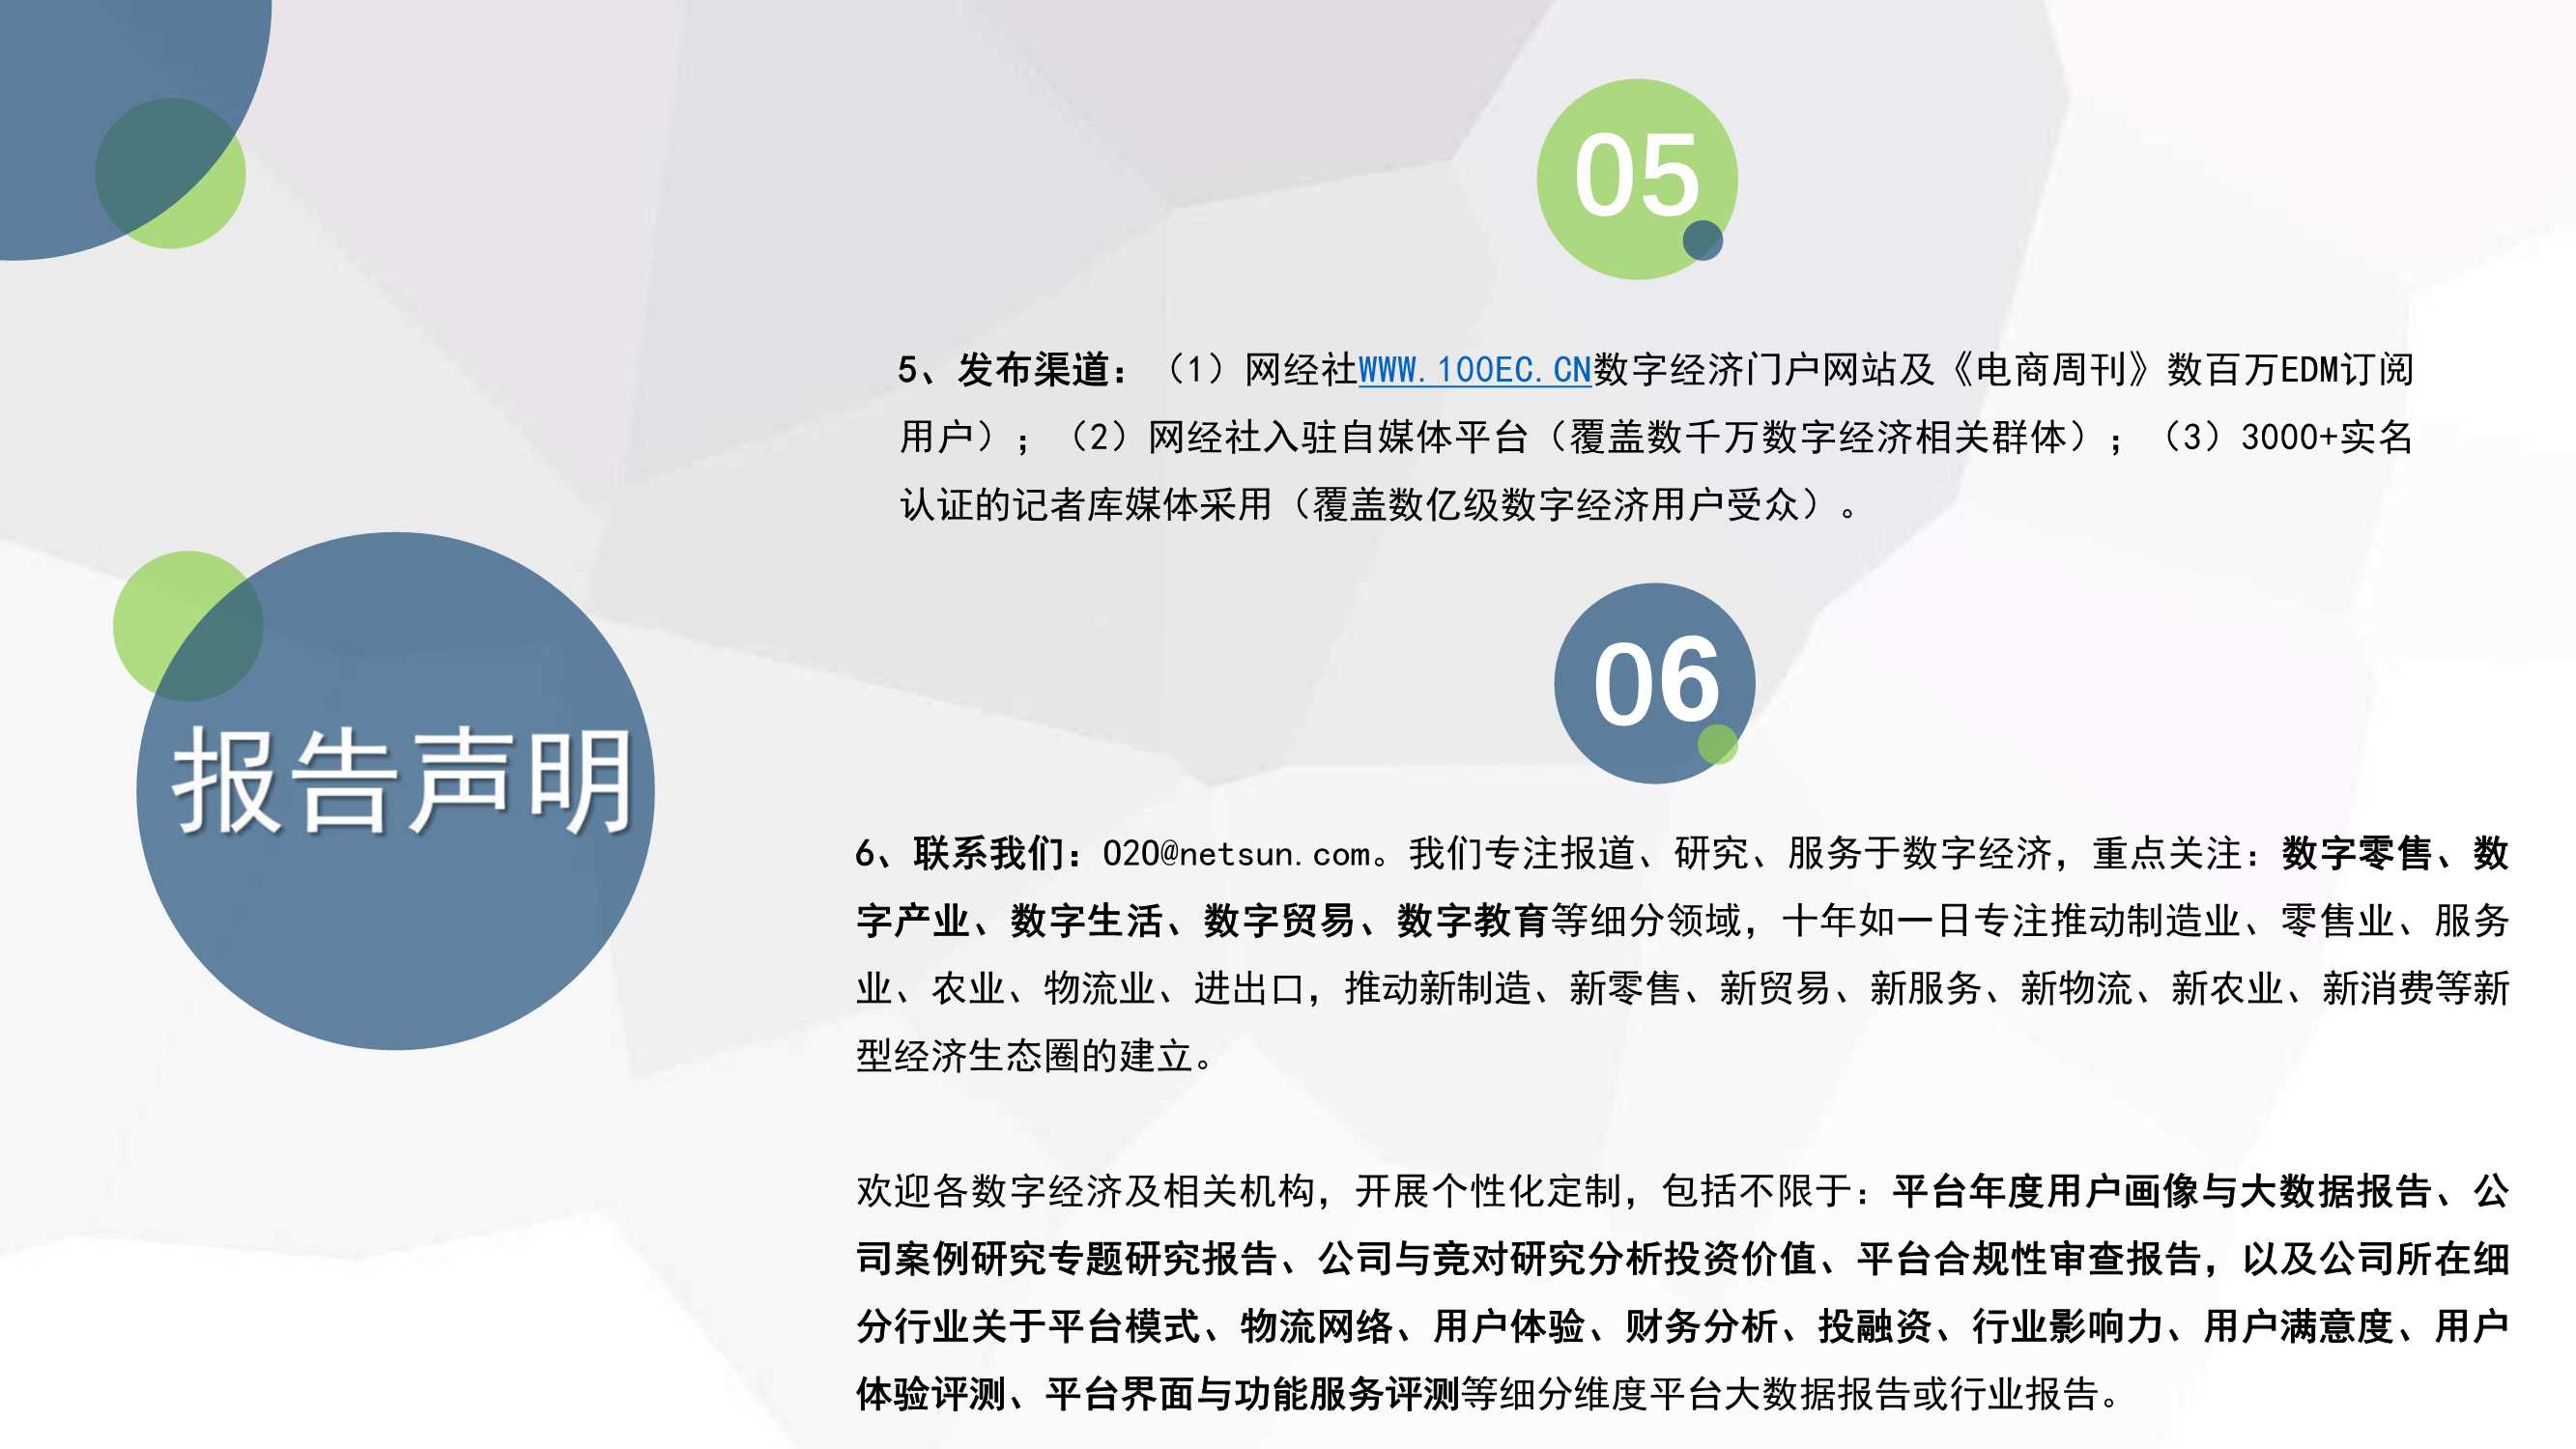 2021年度中国社区团购市场数据报告-2022.03-33页